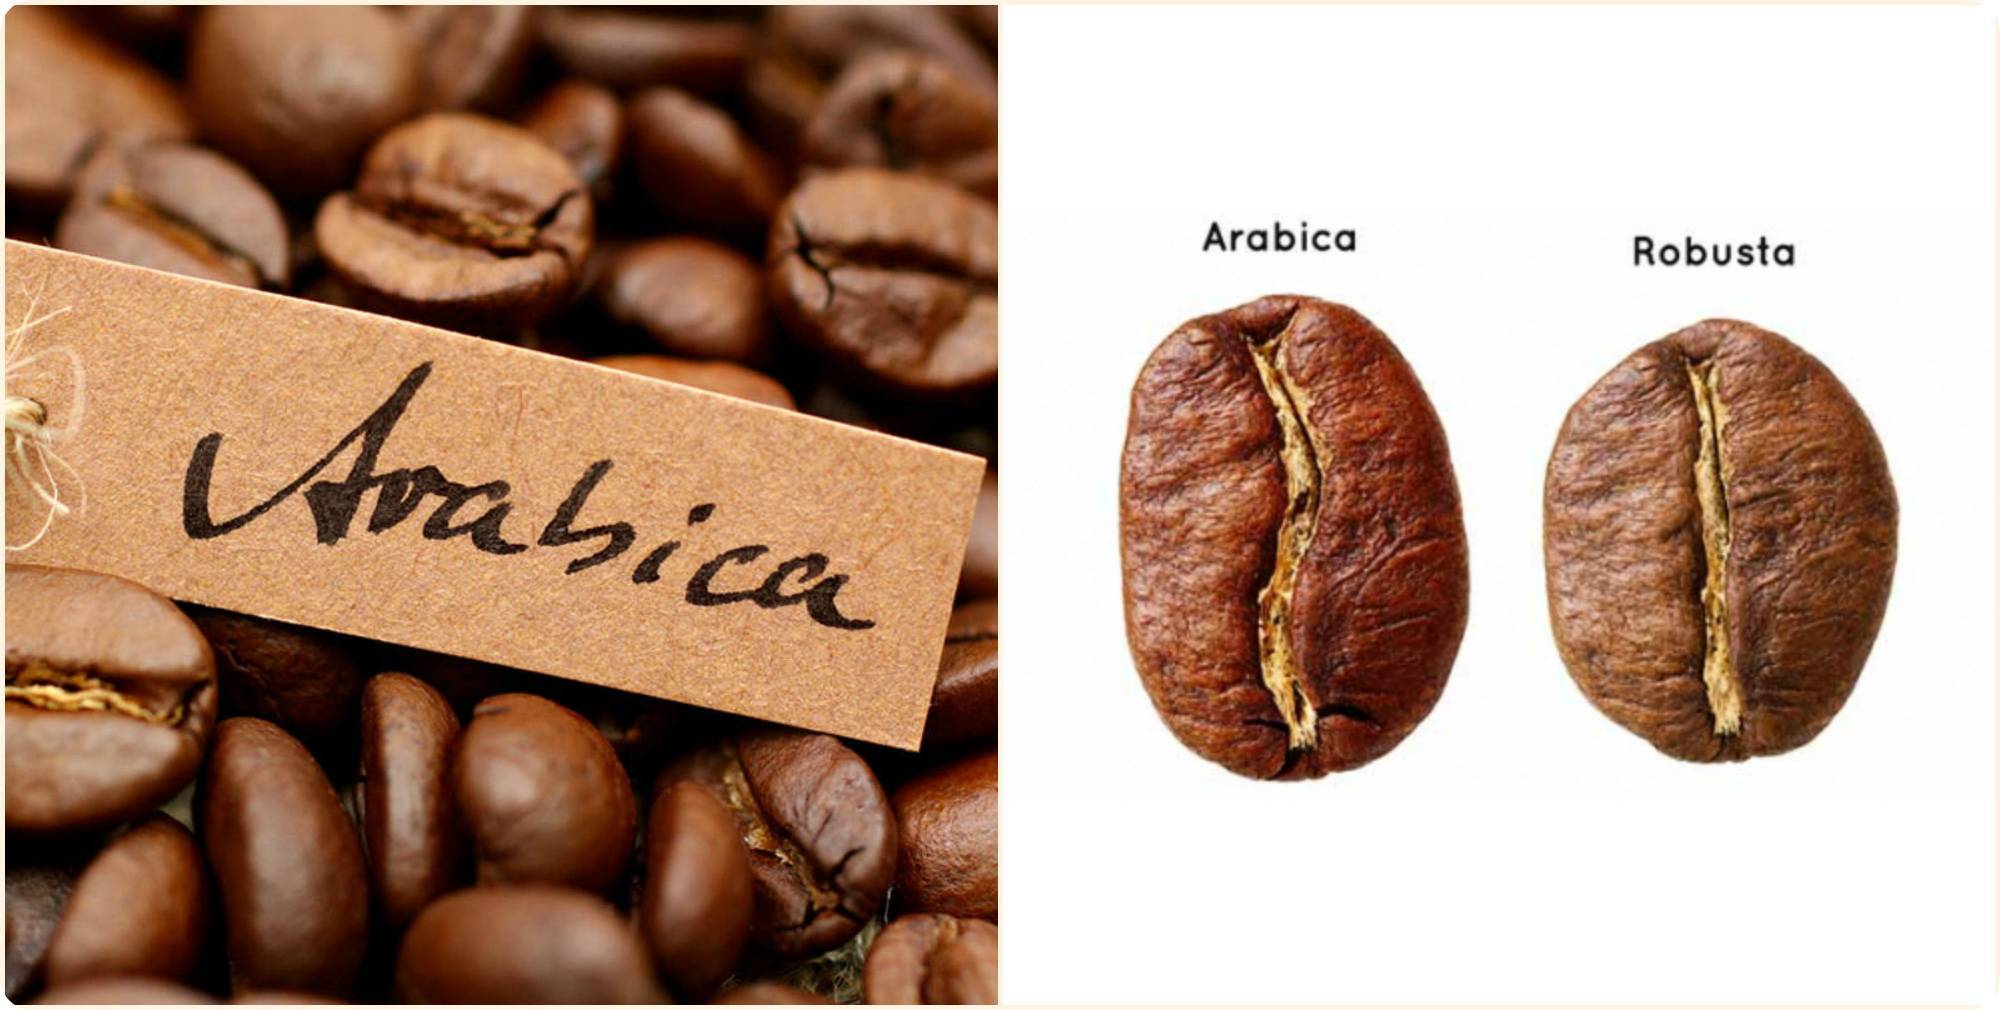 Кофе для кофемашины в зернах: рейтинг лучших фирм